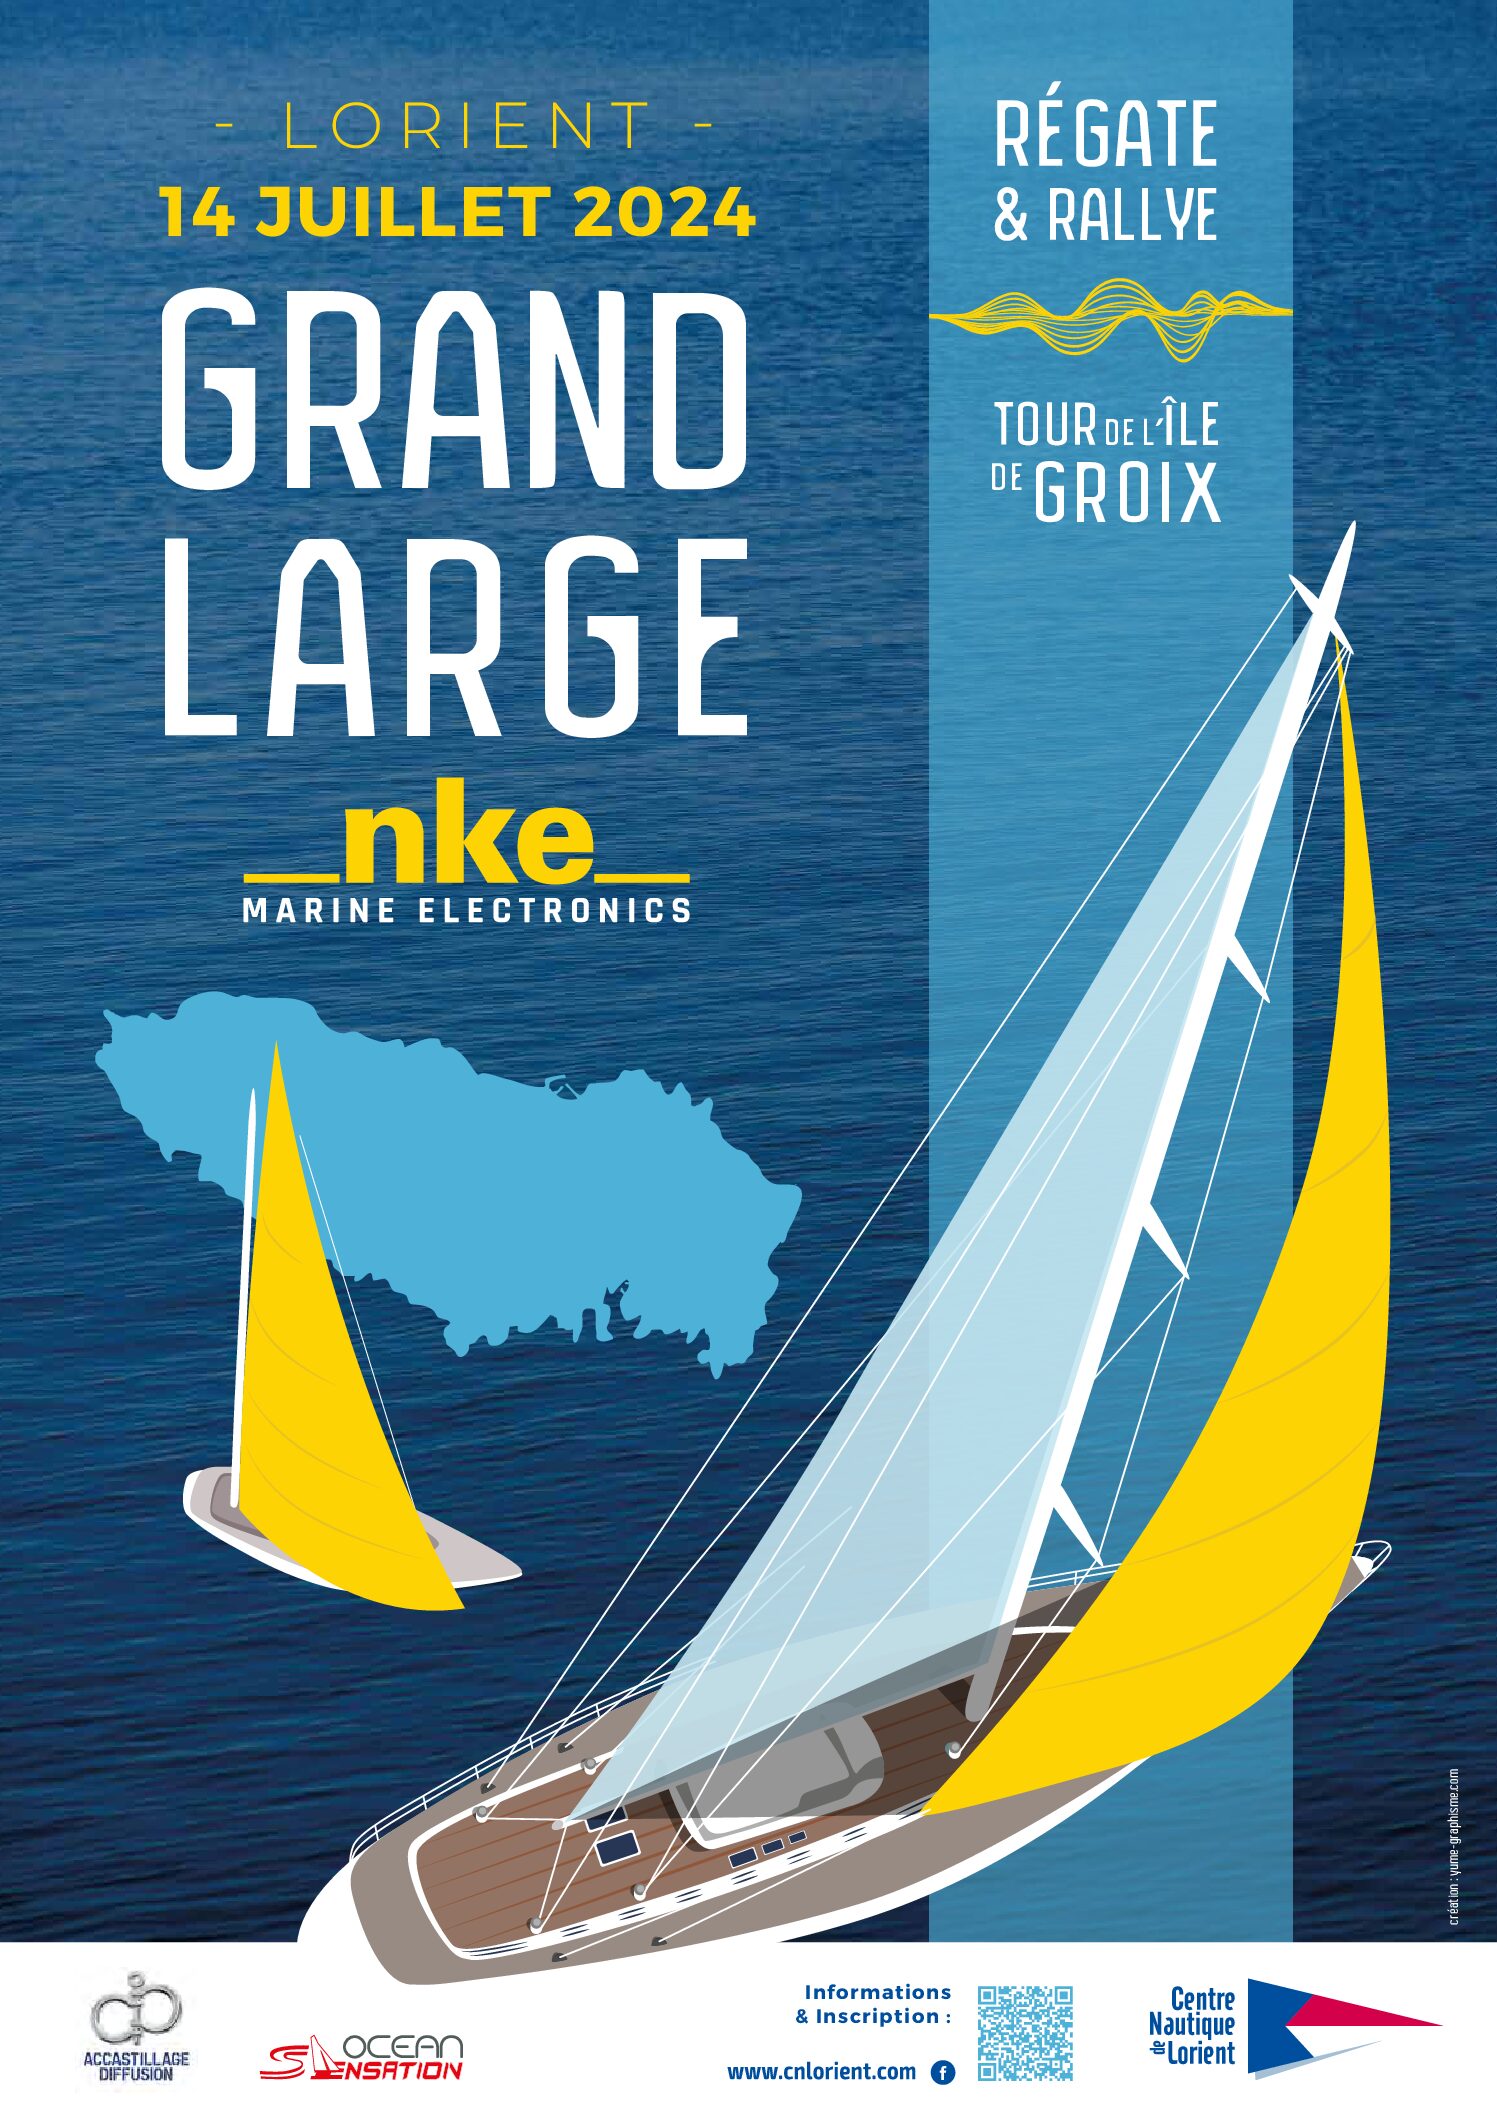 [Partenariat] Grand Large nke